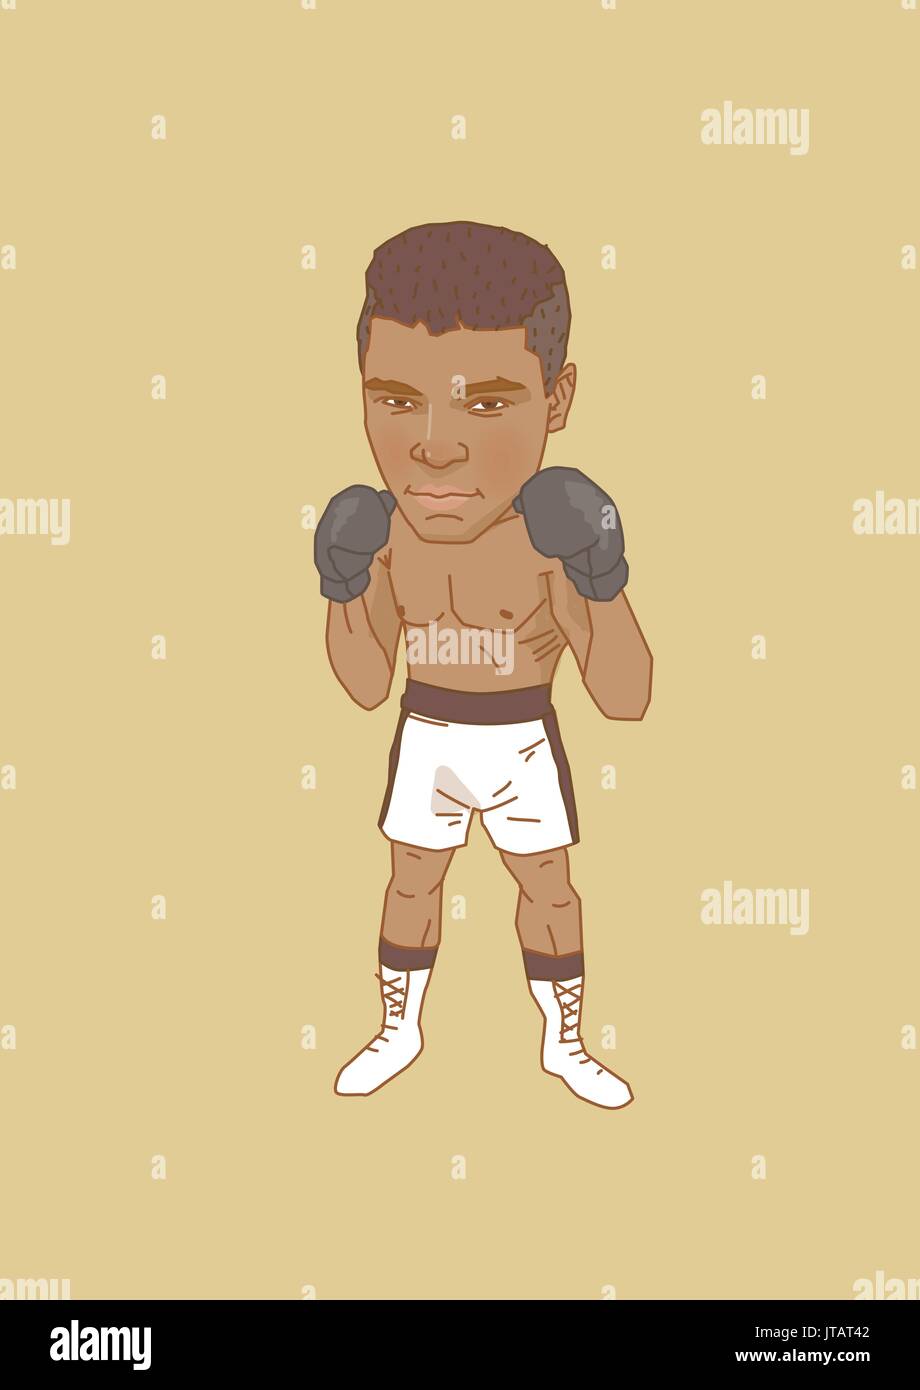 Celebrity boxing Banque d'images vectorielles - Alamy